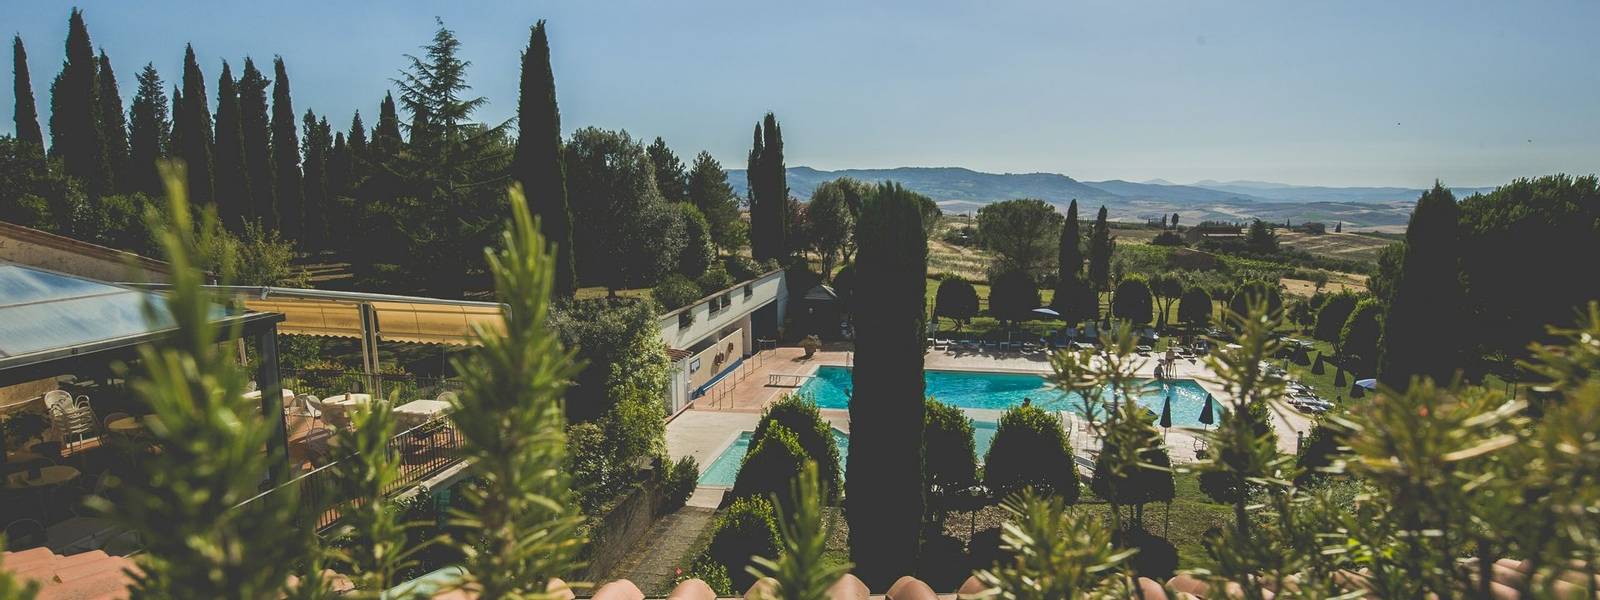 Italy - Tuscany - Hotel Albergo Palazzuolo -camera con vista piano superiore 3.jpg